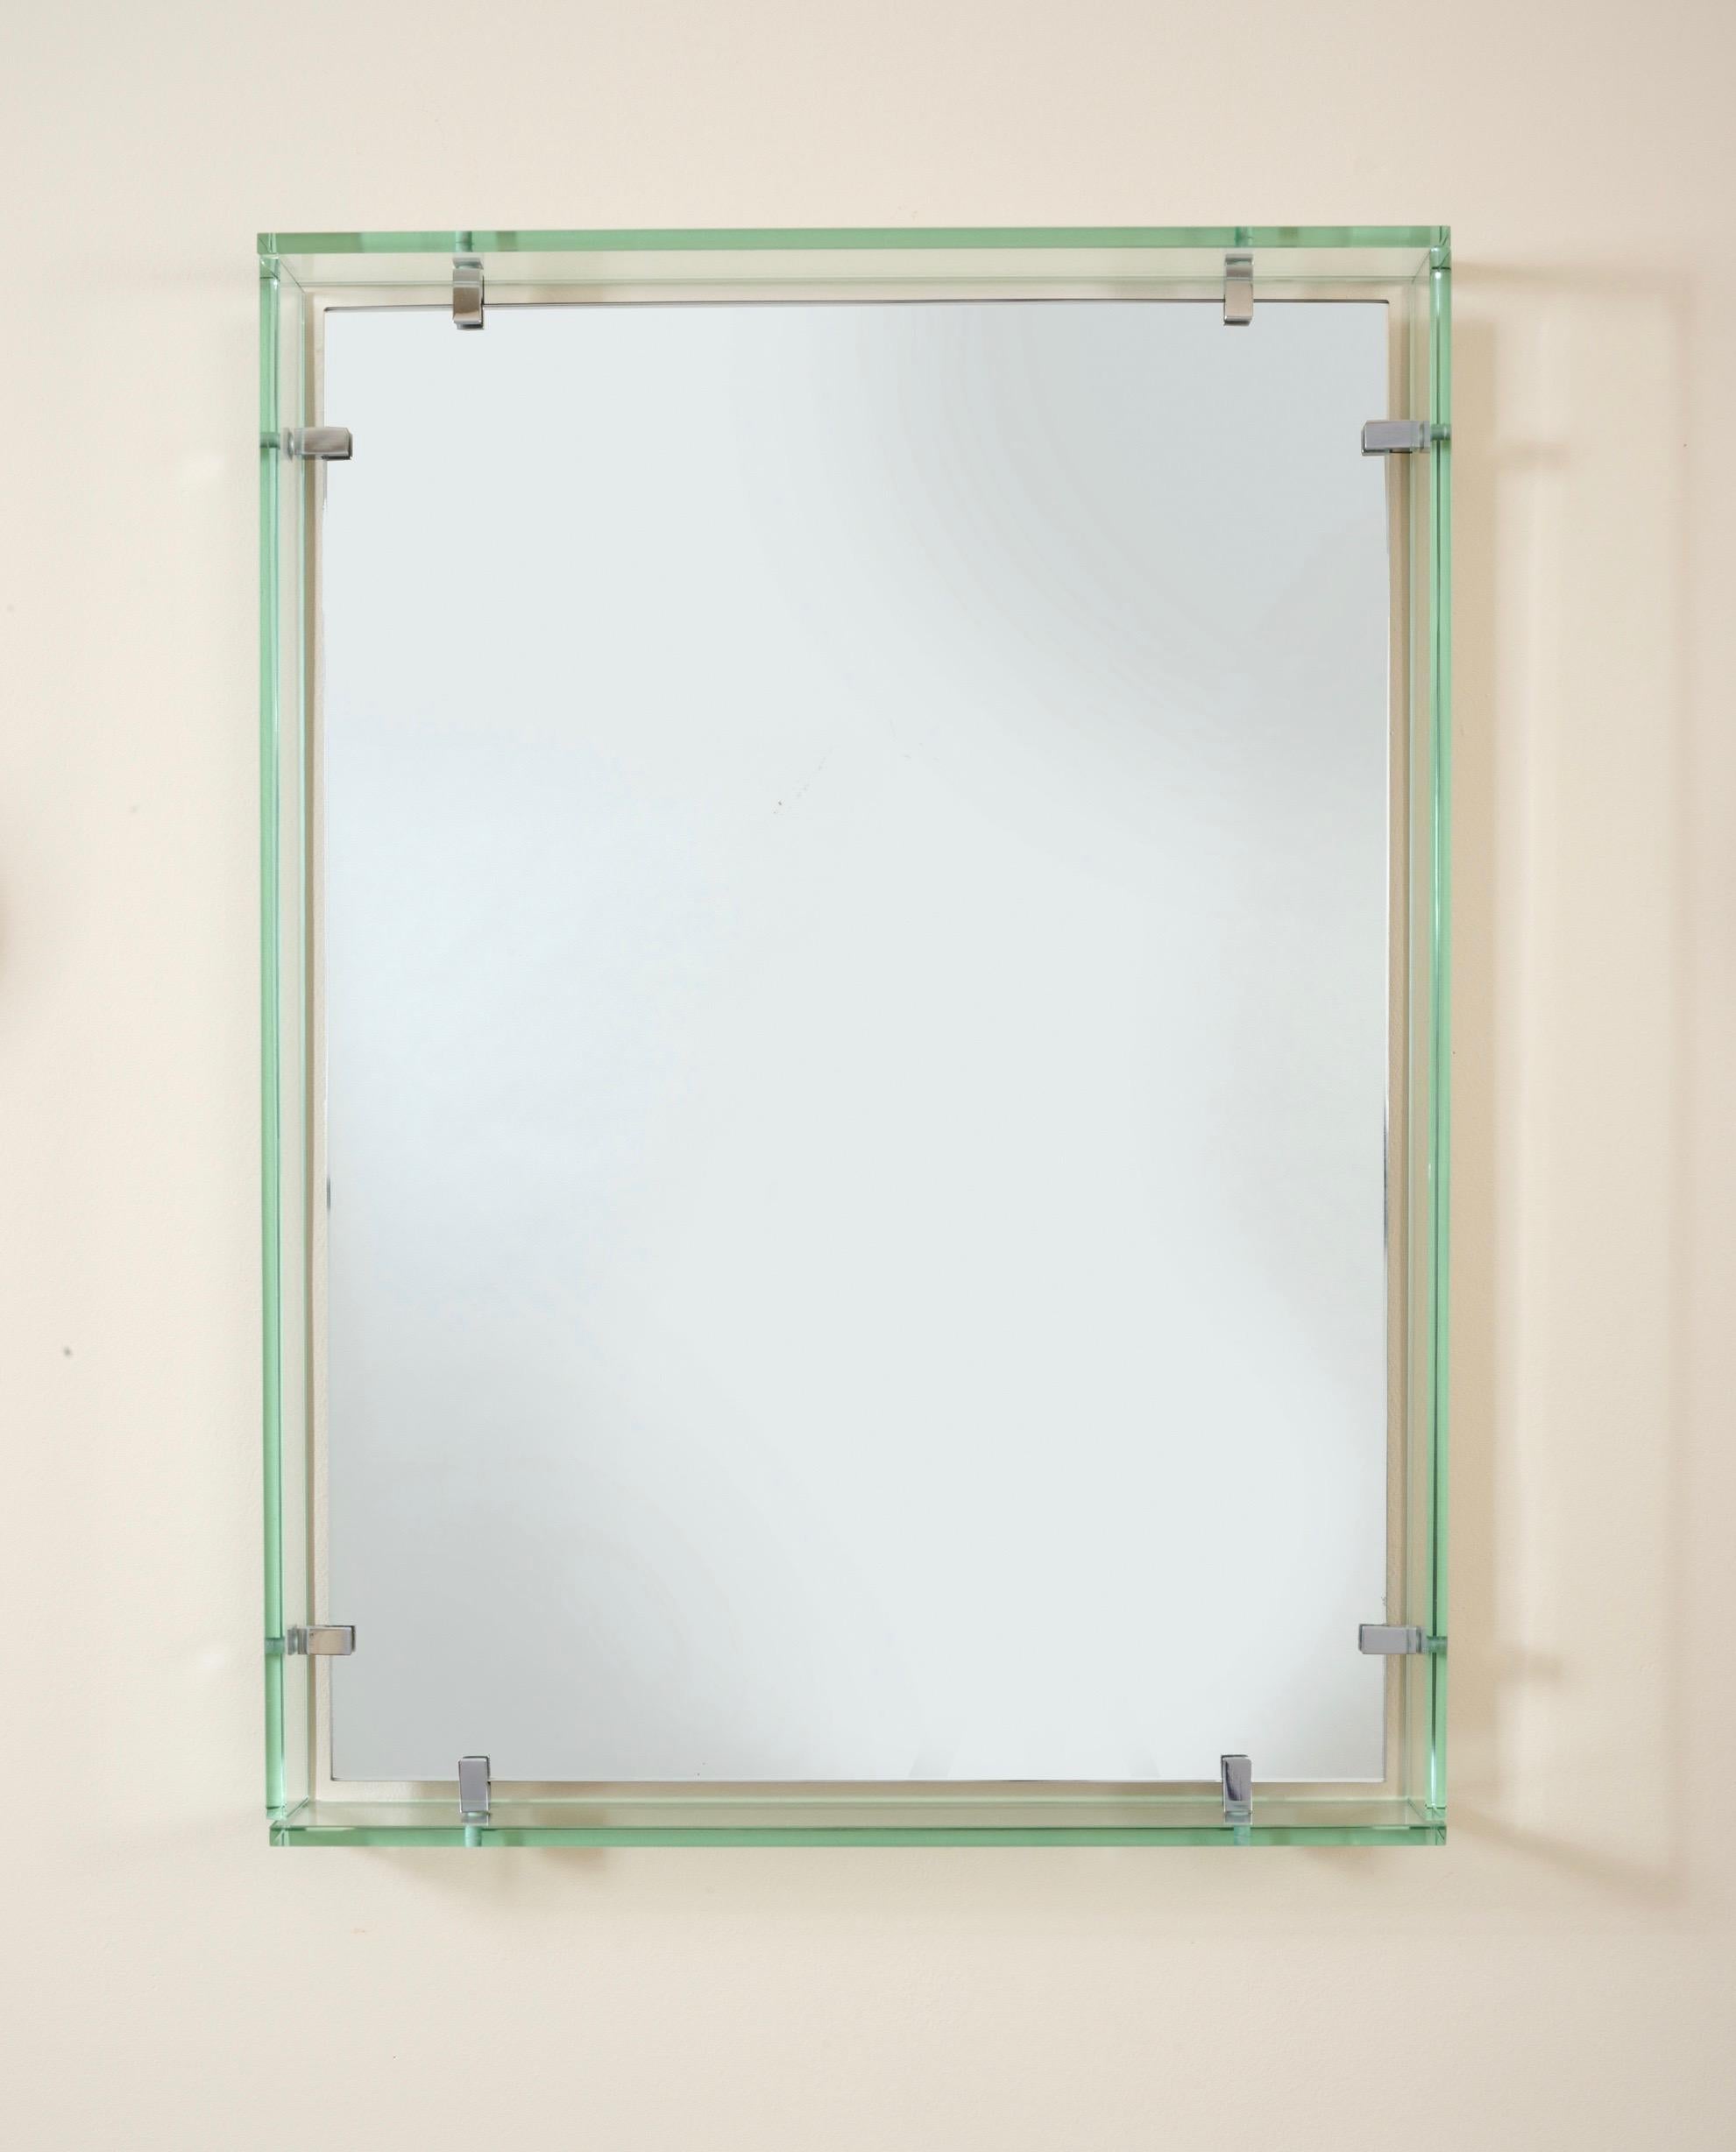 Max Ingrand (1908 - 1969) pour Fontana Arte.

Miroir rectangulaire moderniste de Max Ingrand pour Fontana Arte, avec un cadre flottant composé de quatre épaisses plaques de cristal unies par d'élégantes montures rectangulaires en laiton nickelé. Un